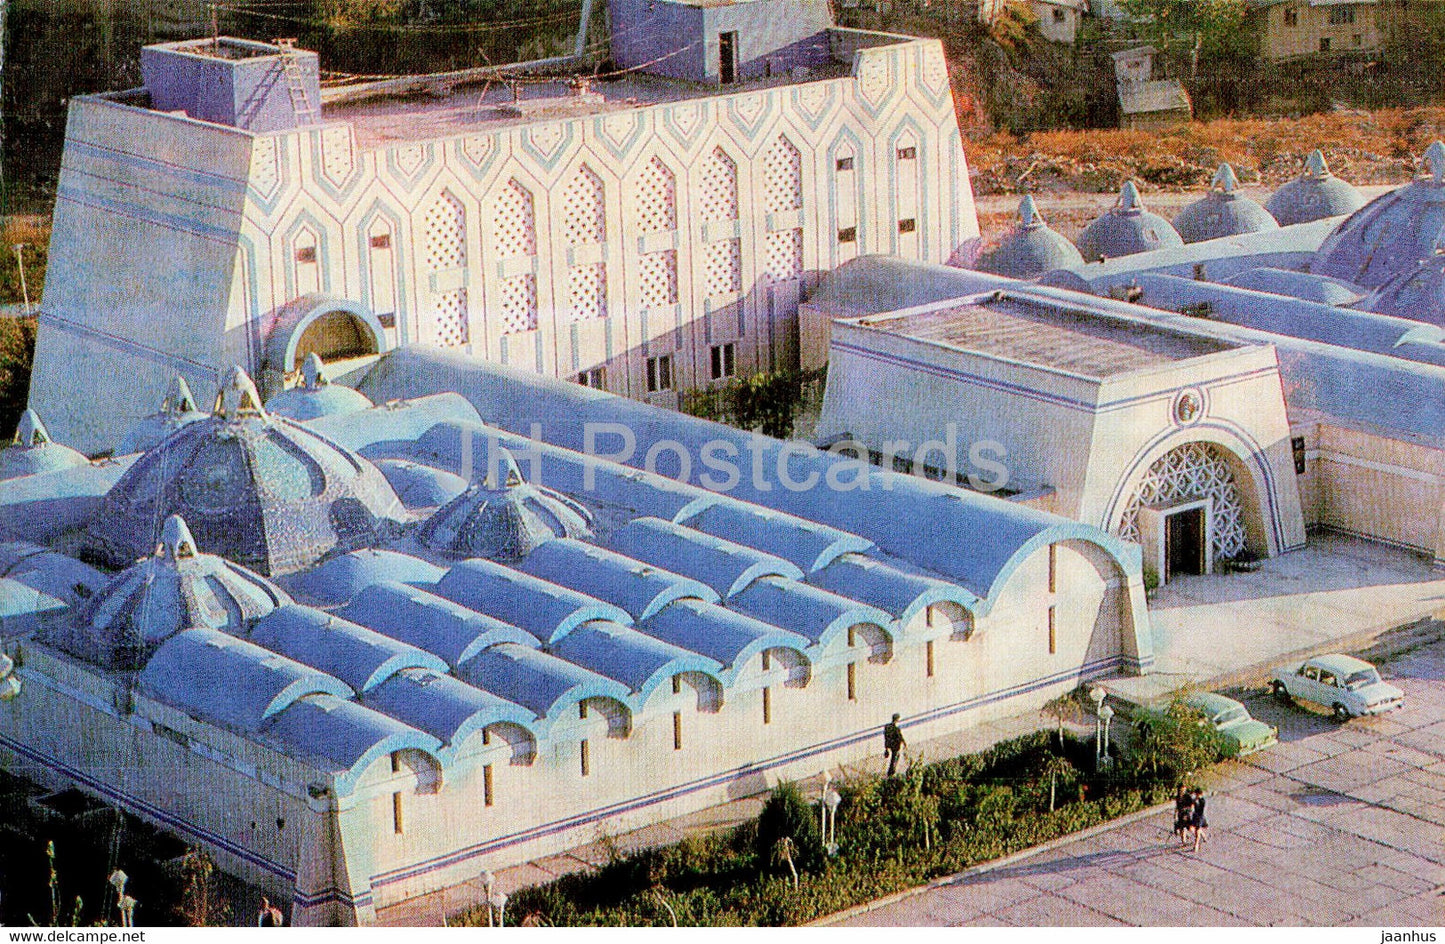 Tashkent - Wash House - 1980 - Uzbekistan USSR - unused - JH Postcards